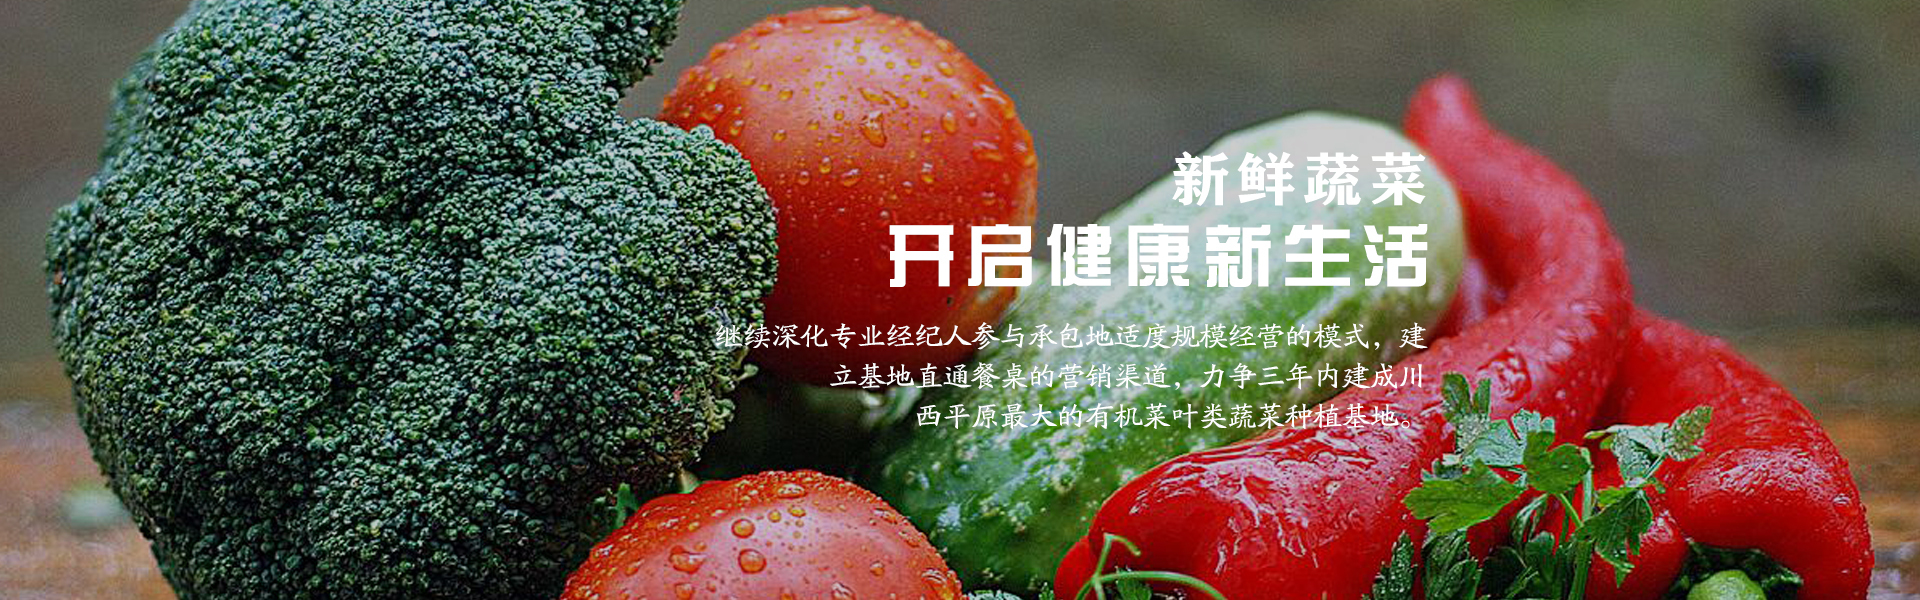 成都有机蔬菜网_无公害蔬菜批发相关-成都市录超农业有限责任公司